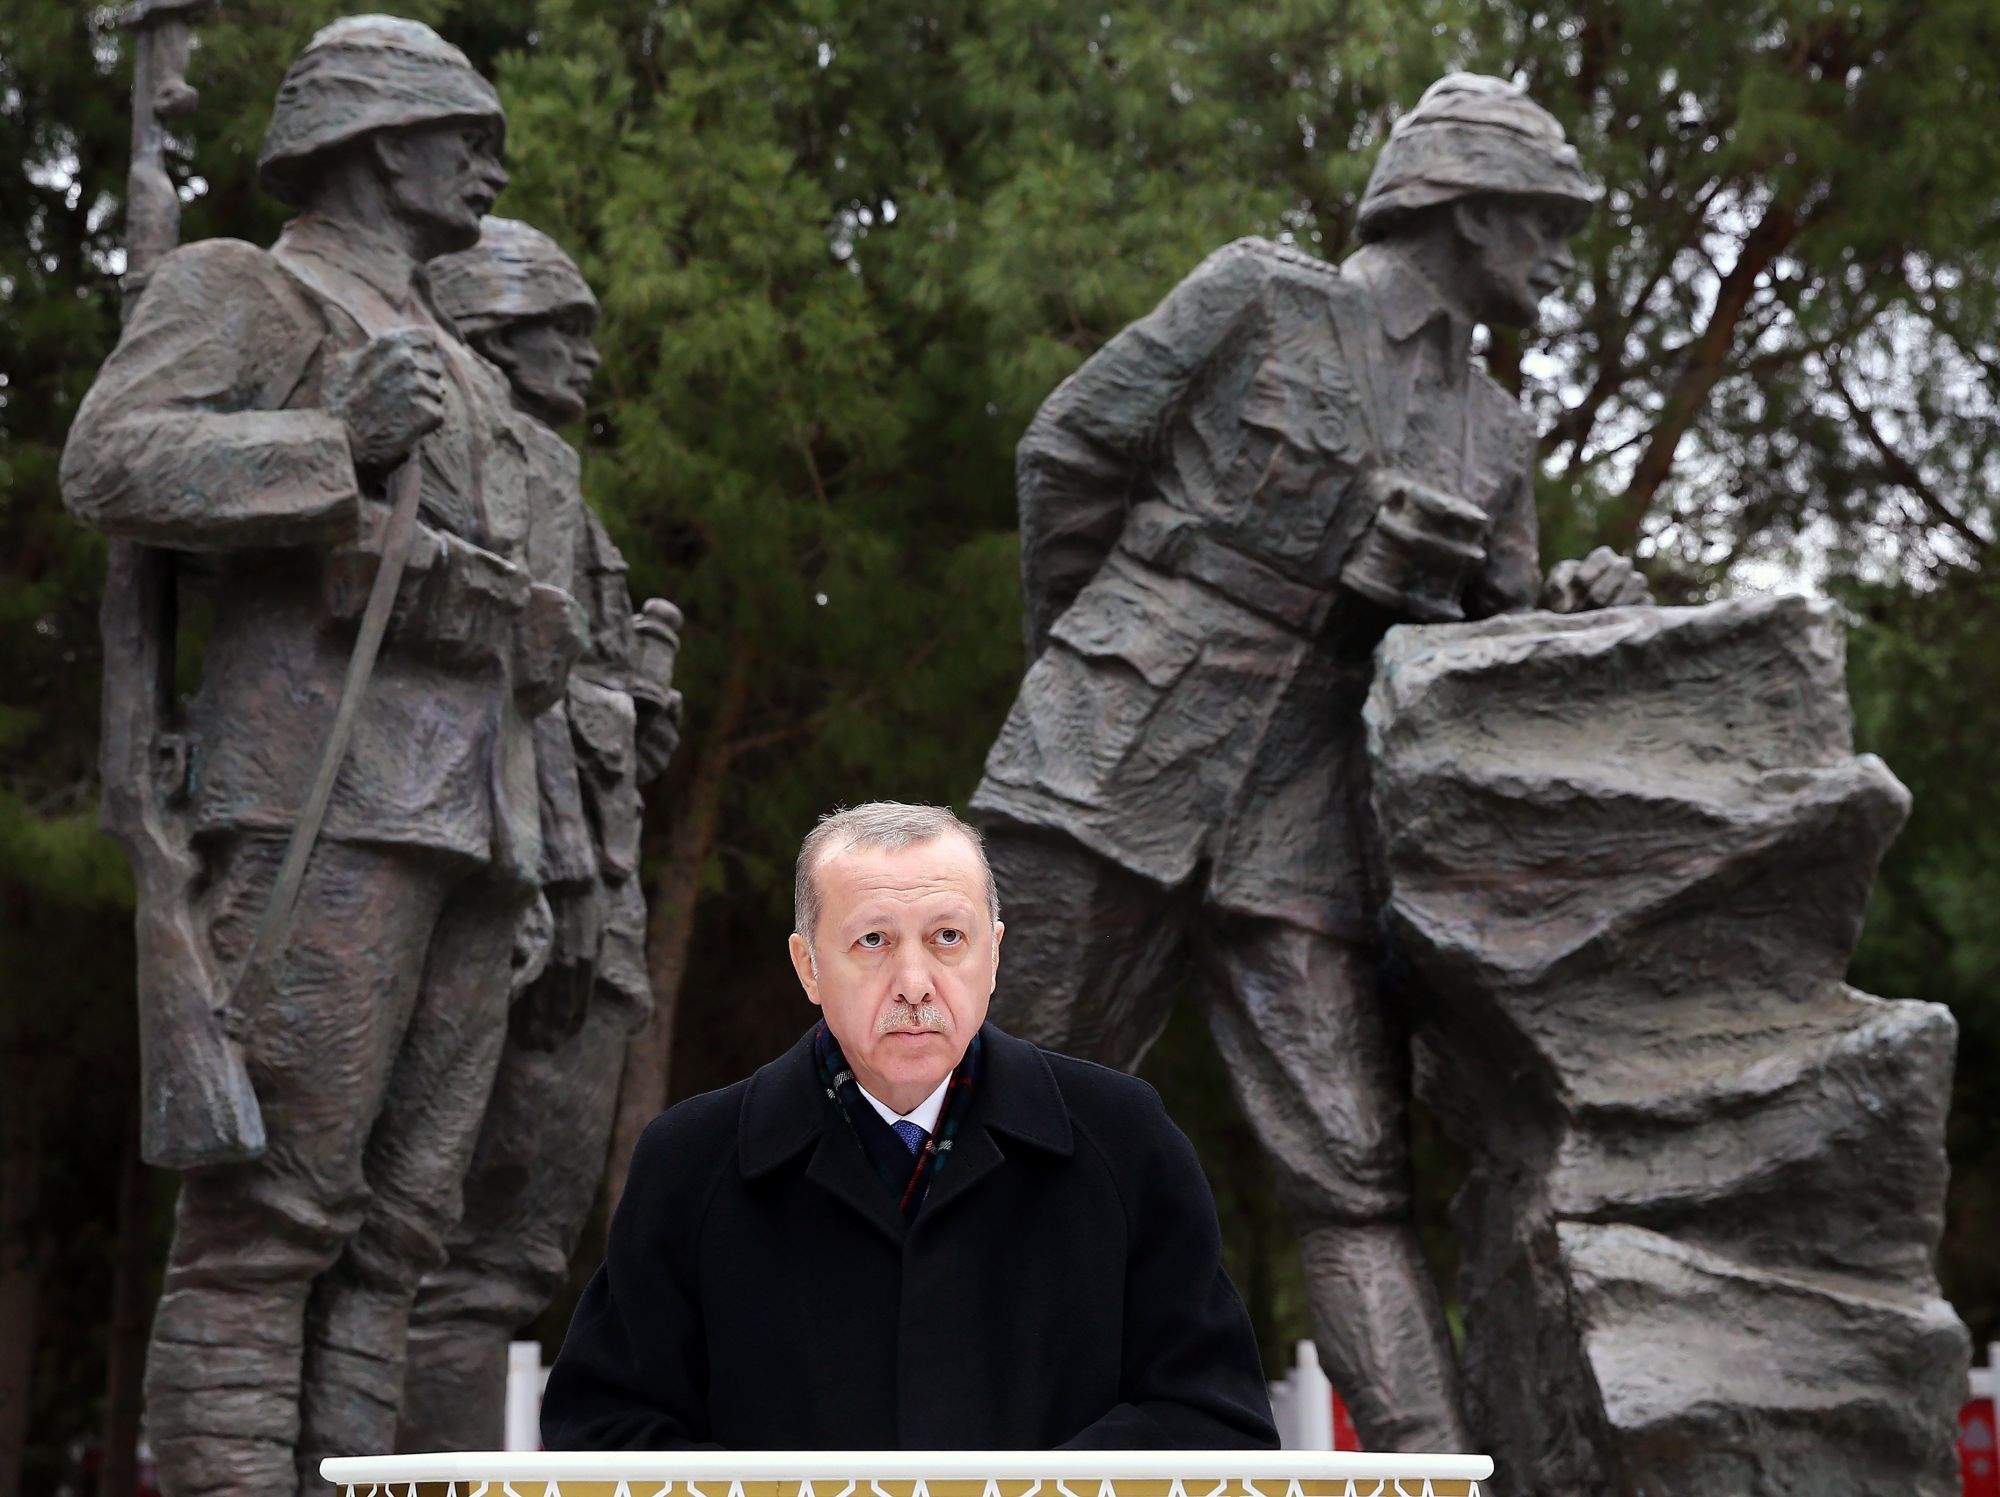 Recep Tayyip Erdogan török államfő beszédet mond a gallipoli ütközet kezdetének 103. évfordulója alkalmából tartott megemlékezésen a gallipoli Mehmetcik emlékmûnél 2018. március 18-án. A Gallipoli-félszigetnek az első világháborúban vívott ostroma során a török hadsereg sikerrel védte meg a Dardanellák tengerszorost a brit és francia erőkkel szemben. (MTI/EPA/Török elnöki sajtóhivatal)